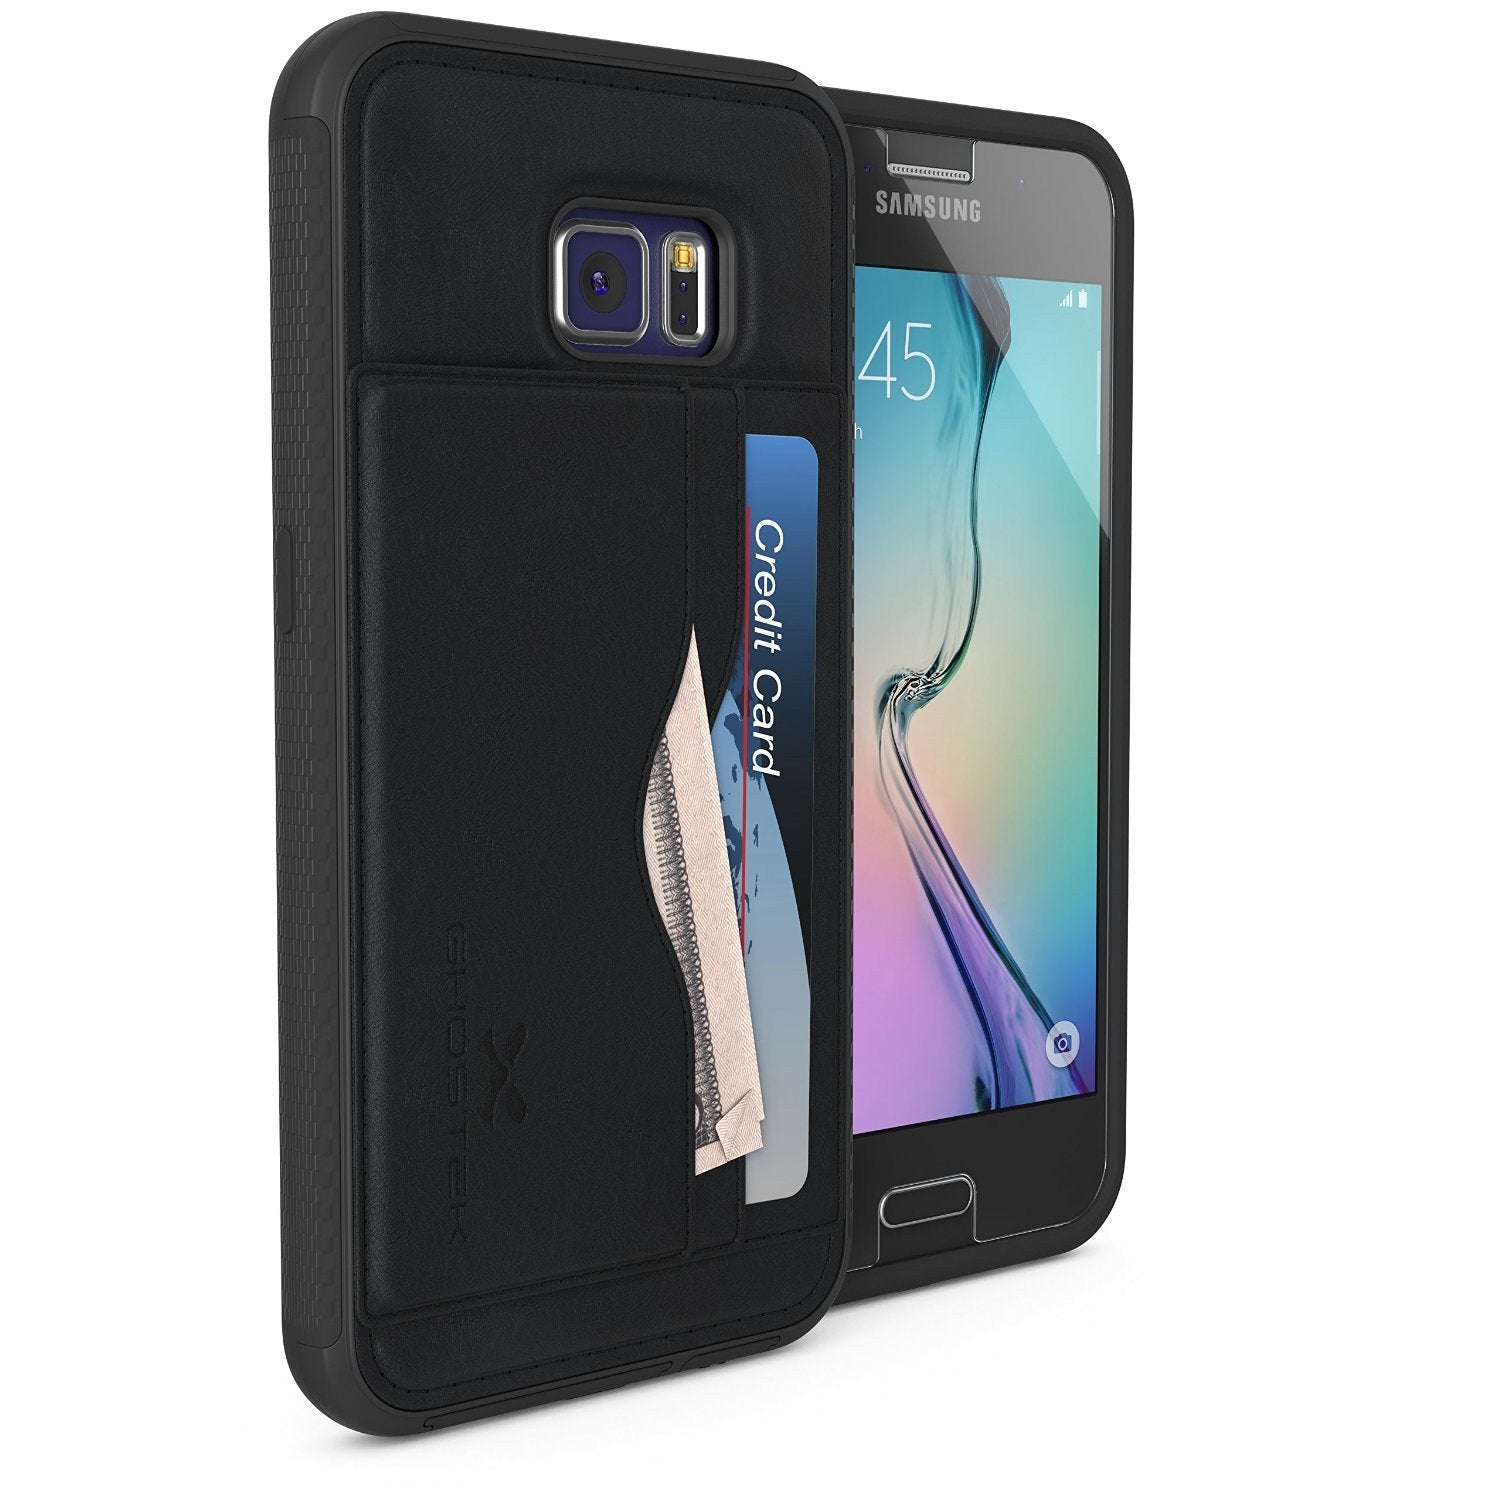 Galaxy S6 Wallet Case, Ghostek Stash Black Wallet Case w/ Tempered Glass | Lifetime Warranty